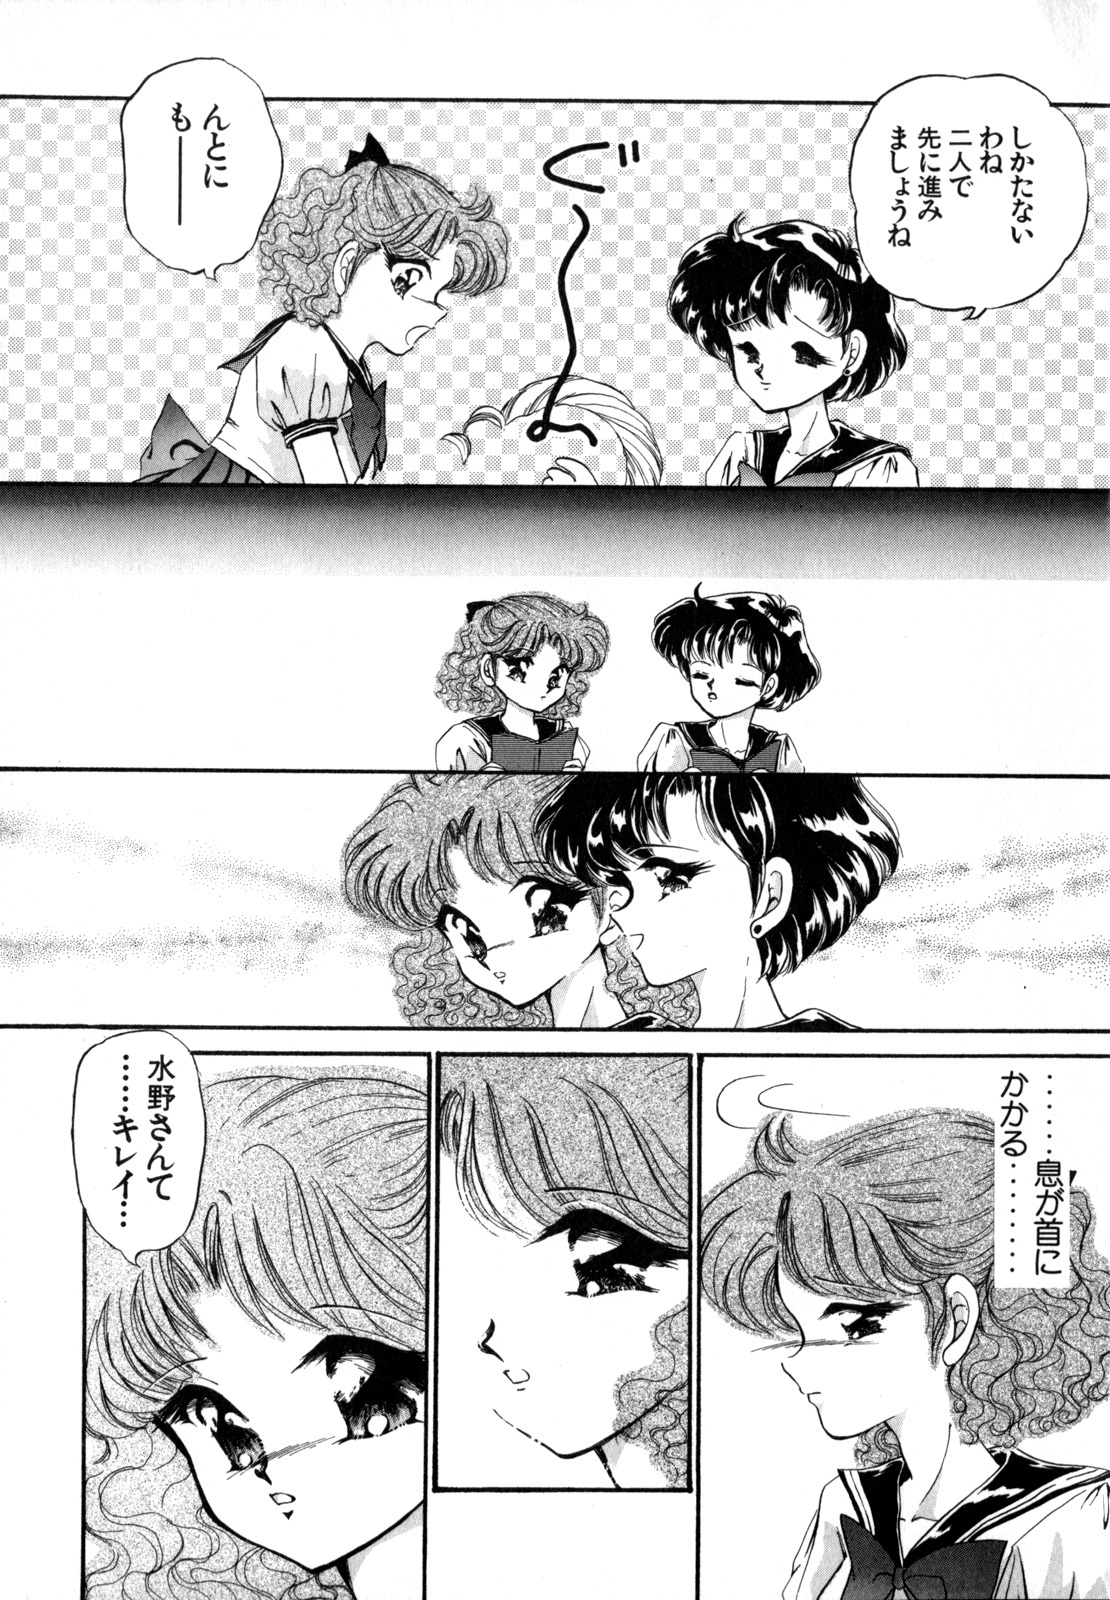 [Anthology] Lunatic Party 4 (Bishoujo Senshi Sailor Moon) page 50 full